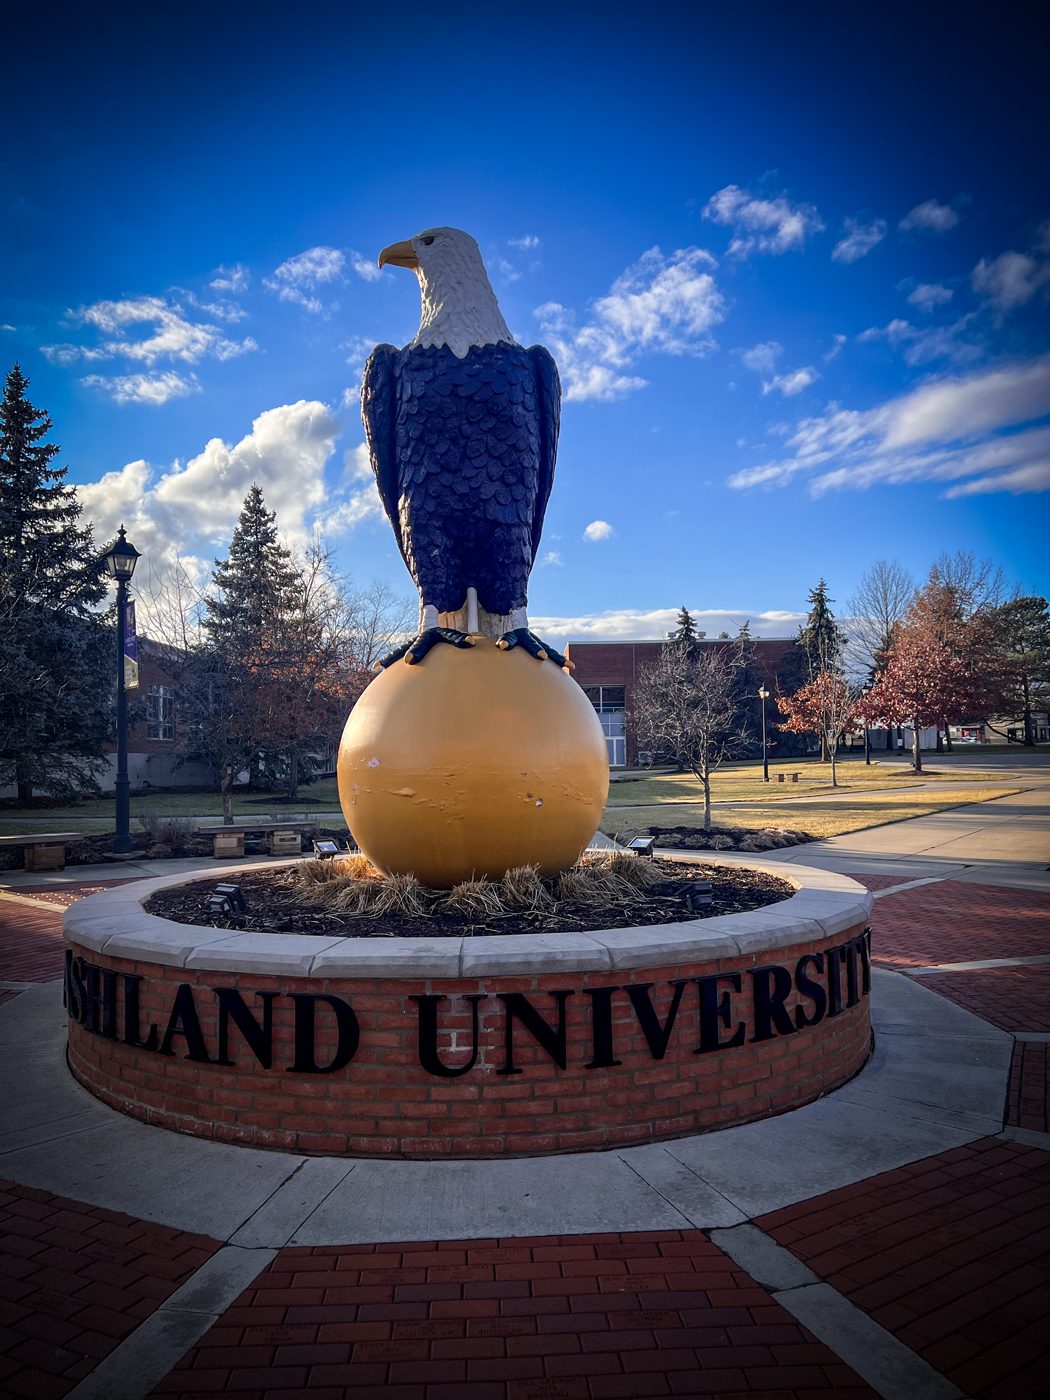 Featured image for “Ashland University”